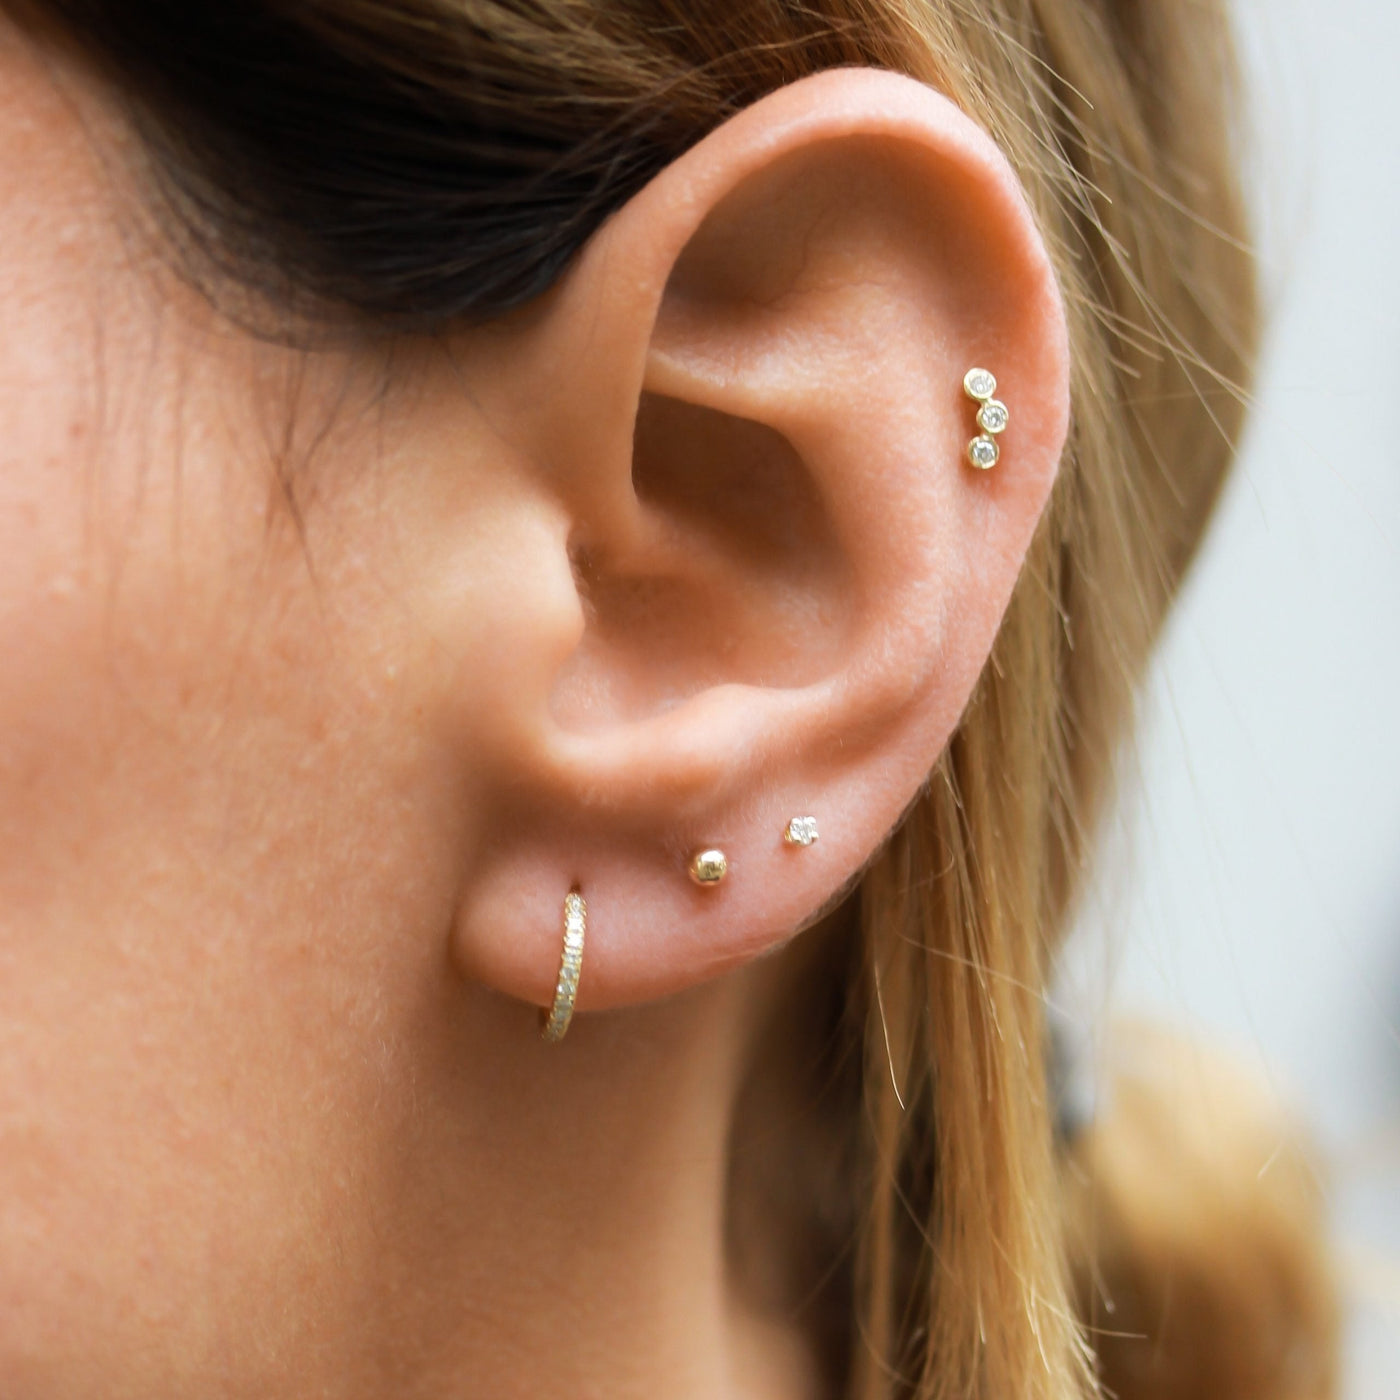 Anna Piercing Earring 14K Gold White Diamonds Earrings 